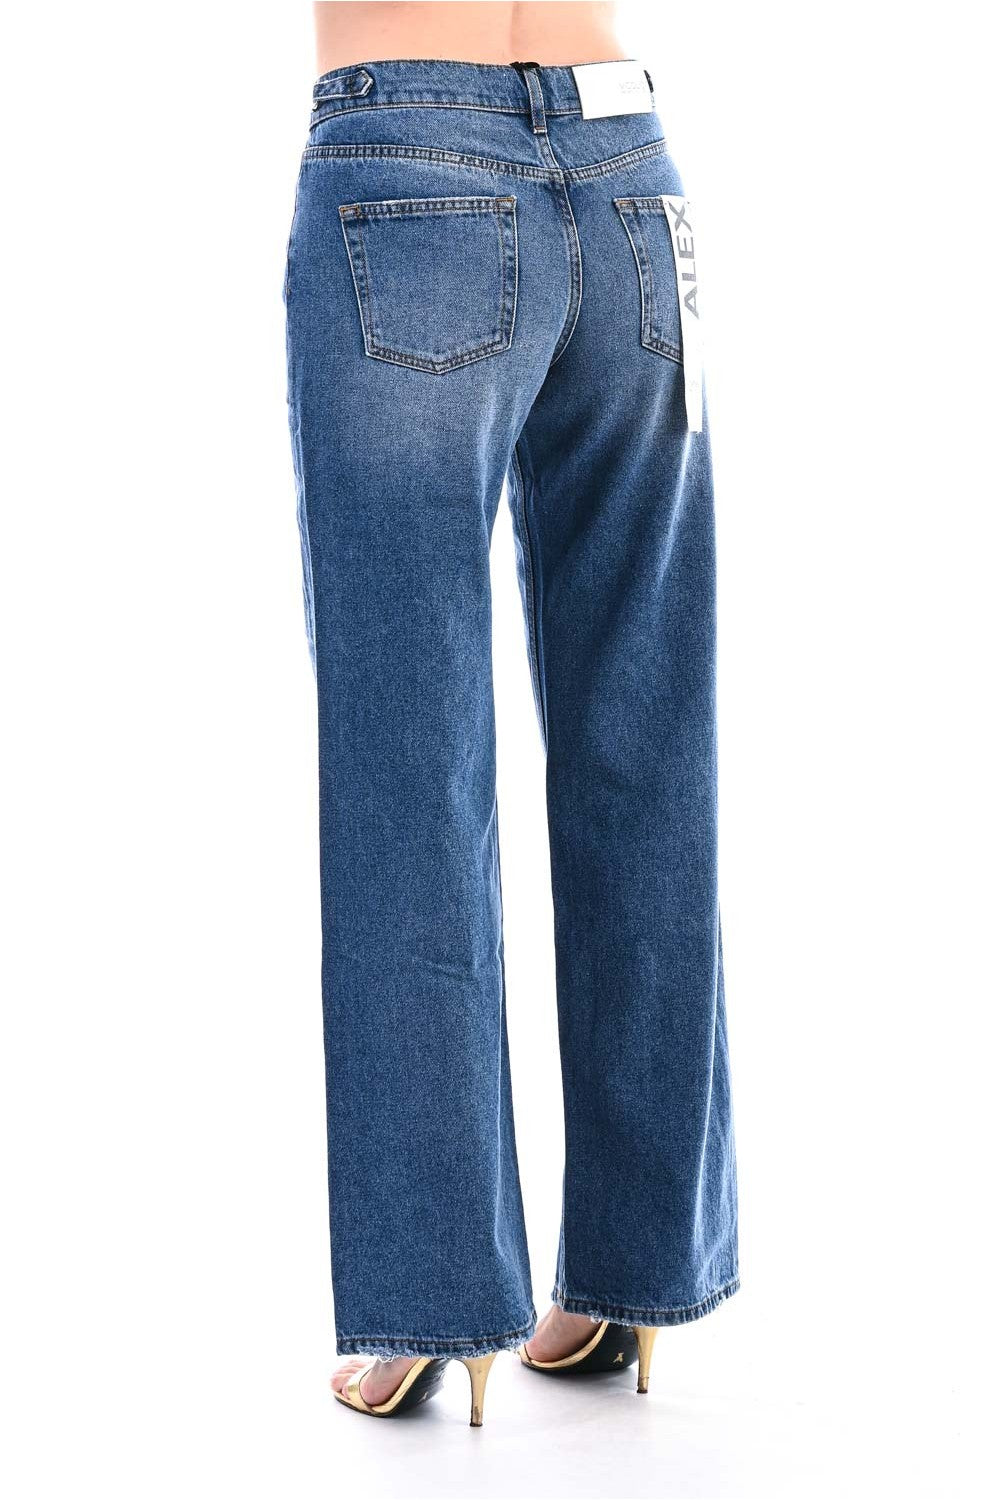 Vicolo donna jeans DR5074